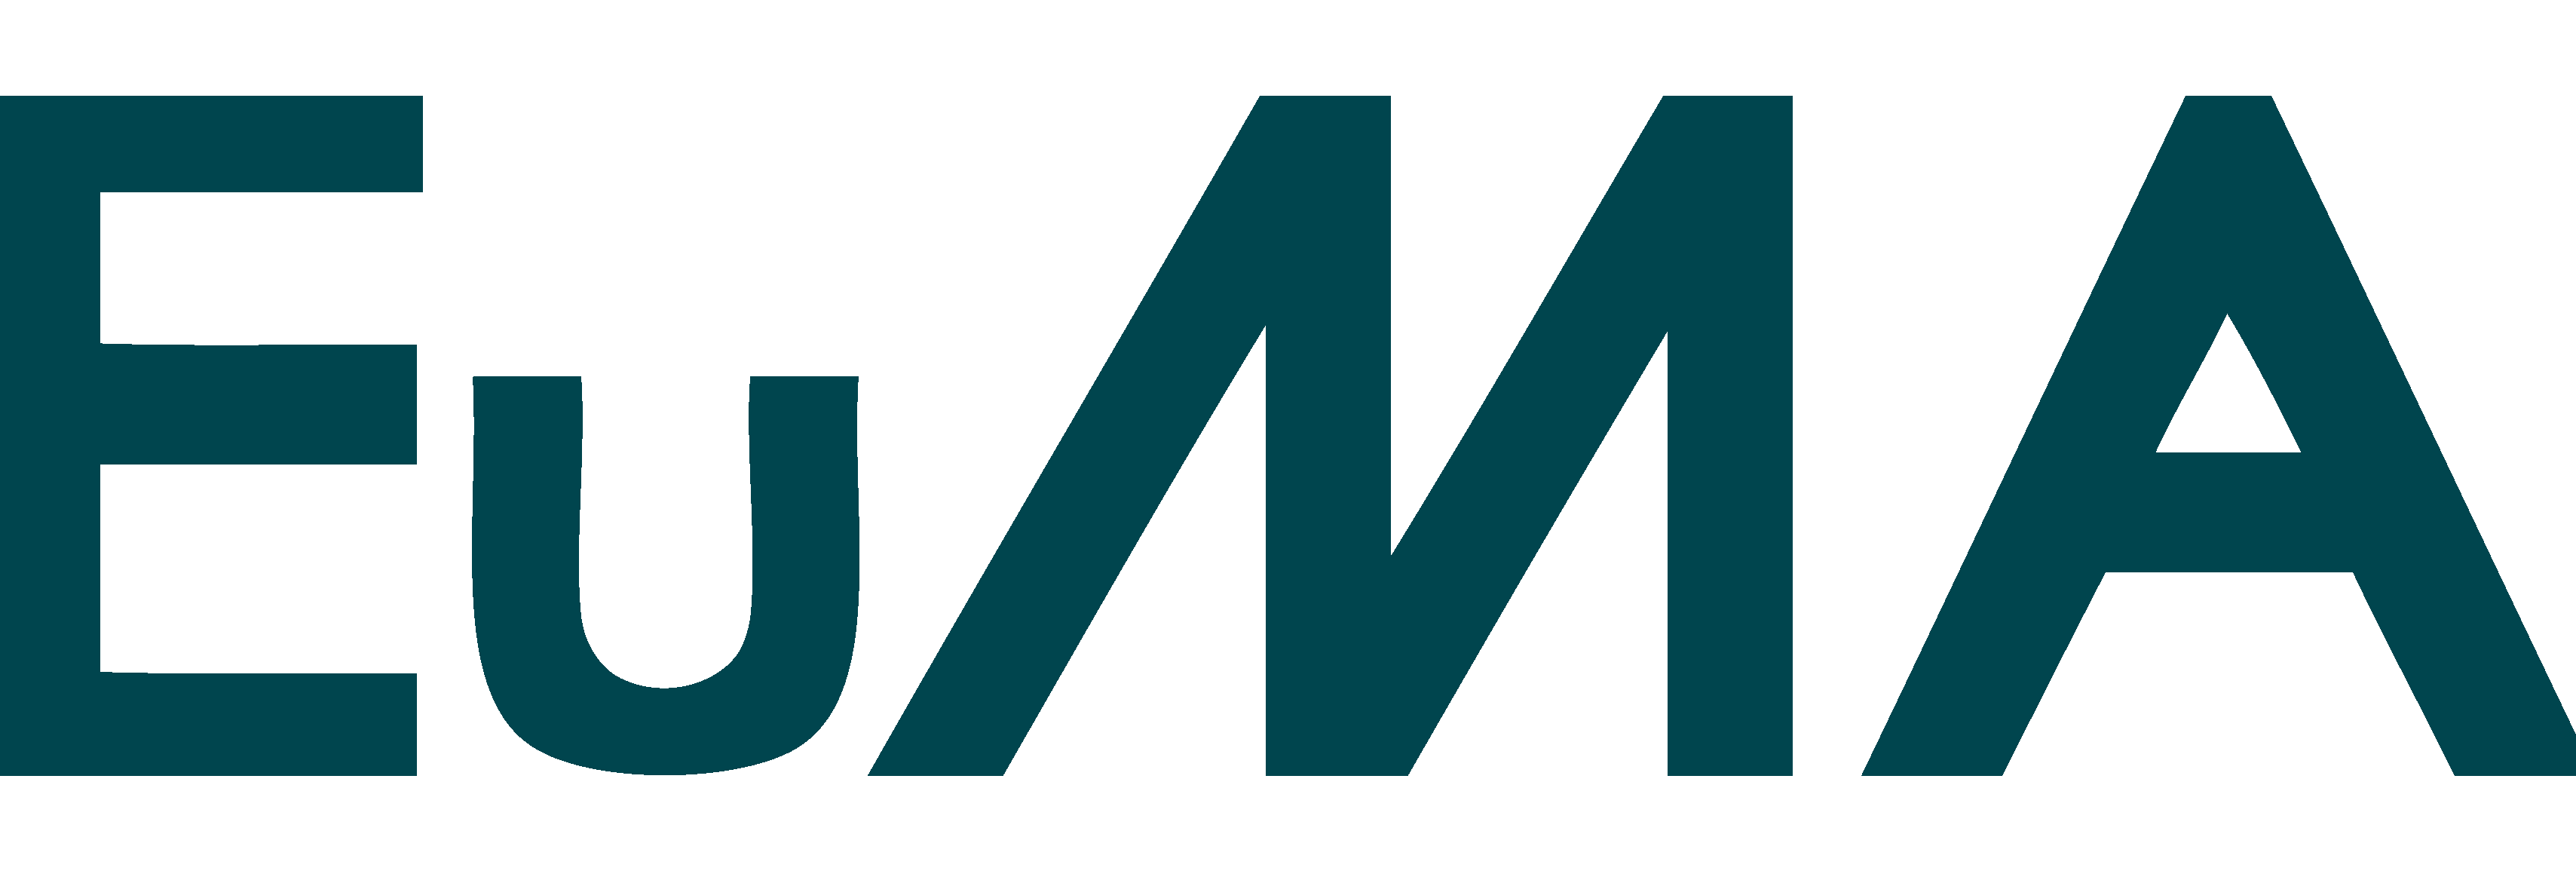 European Microwave Association ( EuMA) logo linking to http://www.eumwa.org/